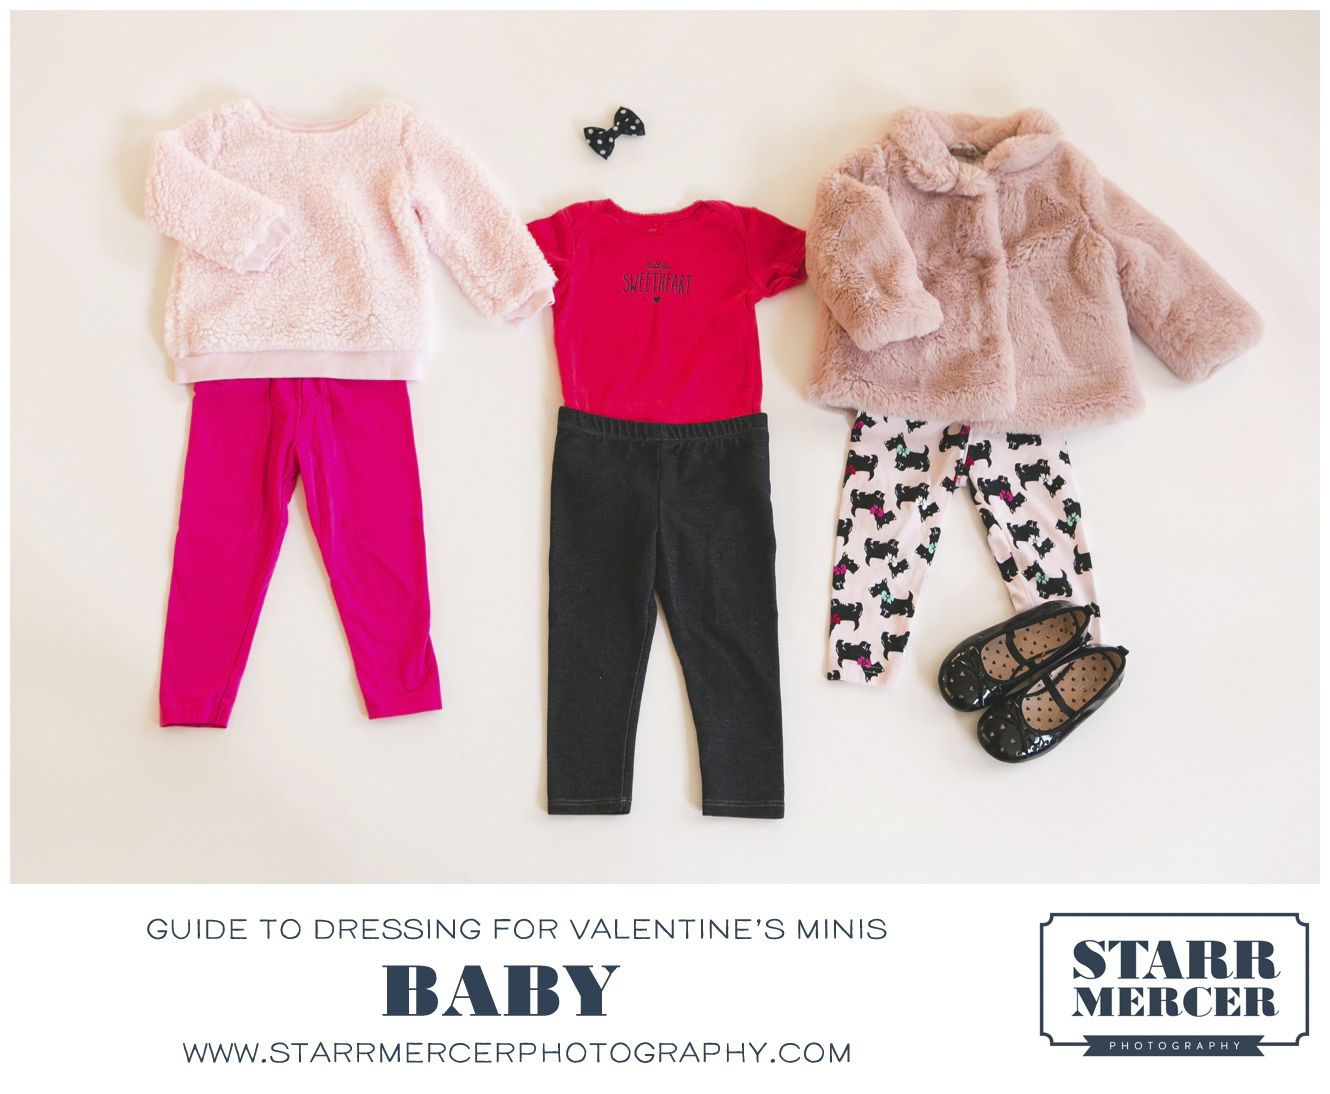 Baby Valentine wardrobe inspiration from Gap, Zara, Old Navy and Joe Fresh photo